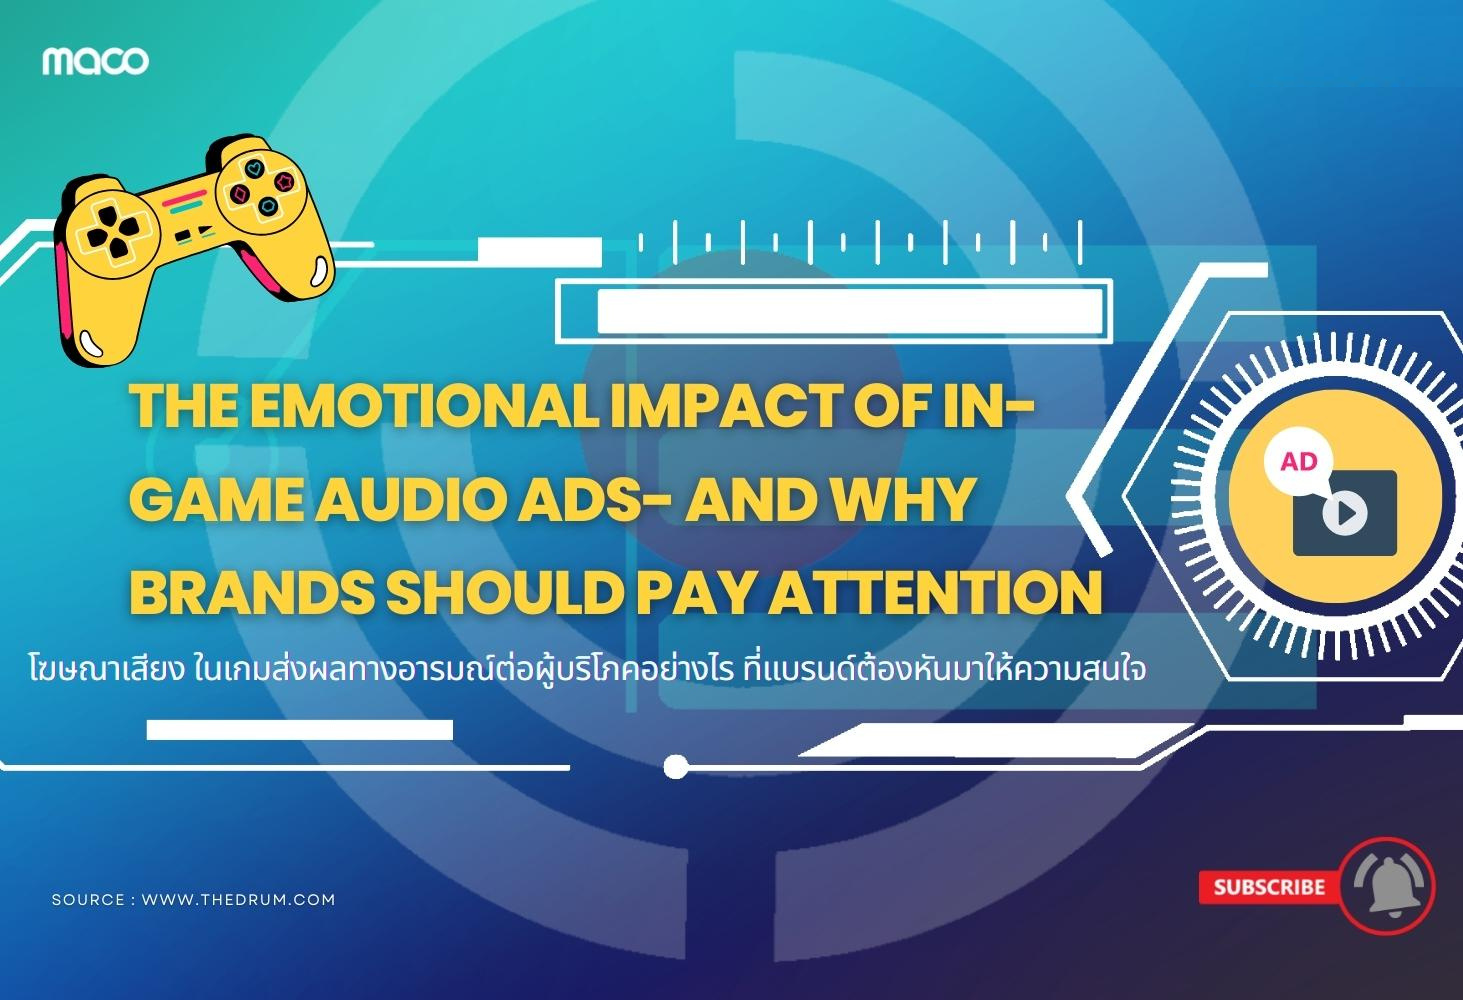 โฆษณาเสียง (Audio ads) ในเกมส่งผลทางอารมณ์ต่อผู้บริโภคอย่างไร ที่แบรนด์ต้องหันมาให้ความสนใจ 